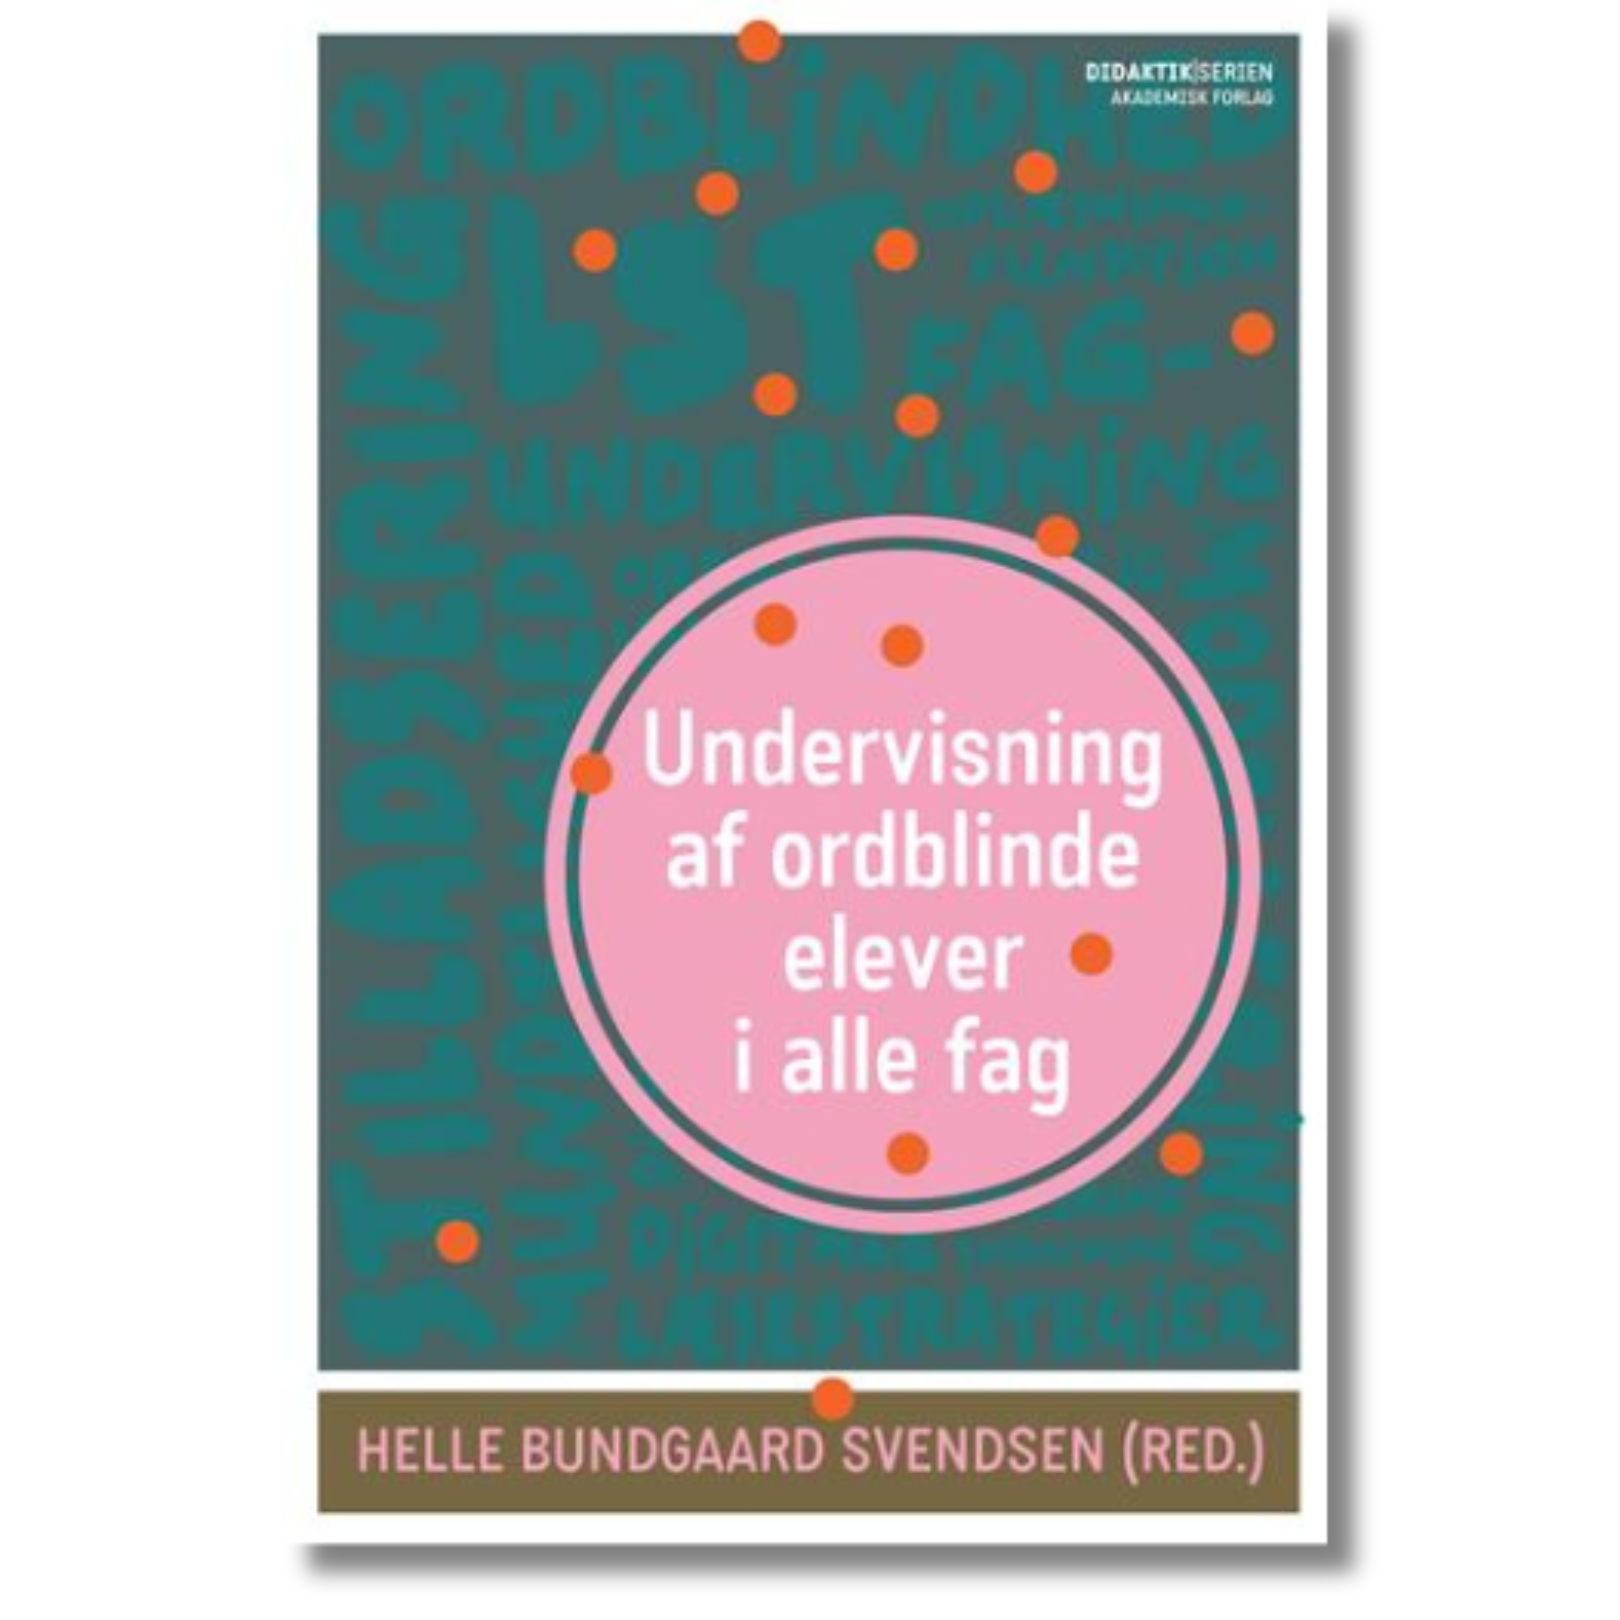 Undervisning af ordblinde elever i alle fag redigeret af Helle Bundgaard Svendsen og Lone Nielsen